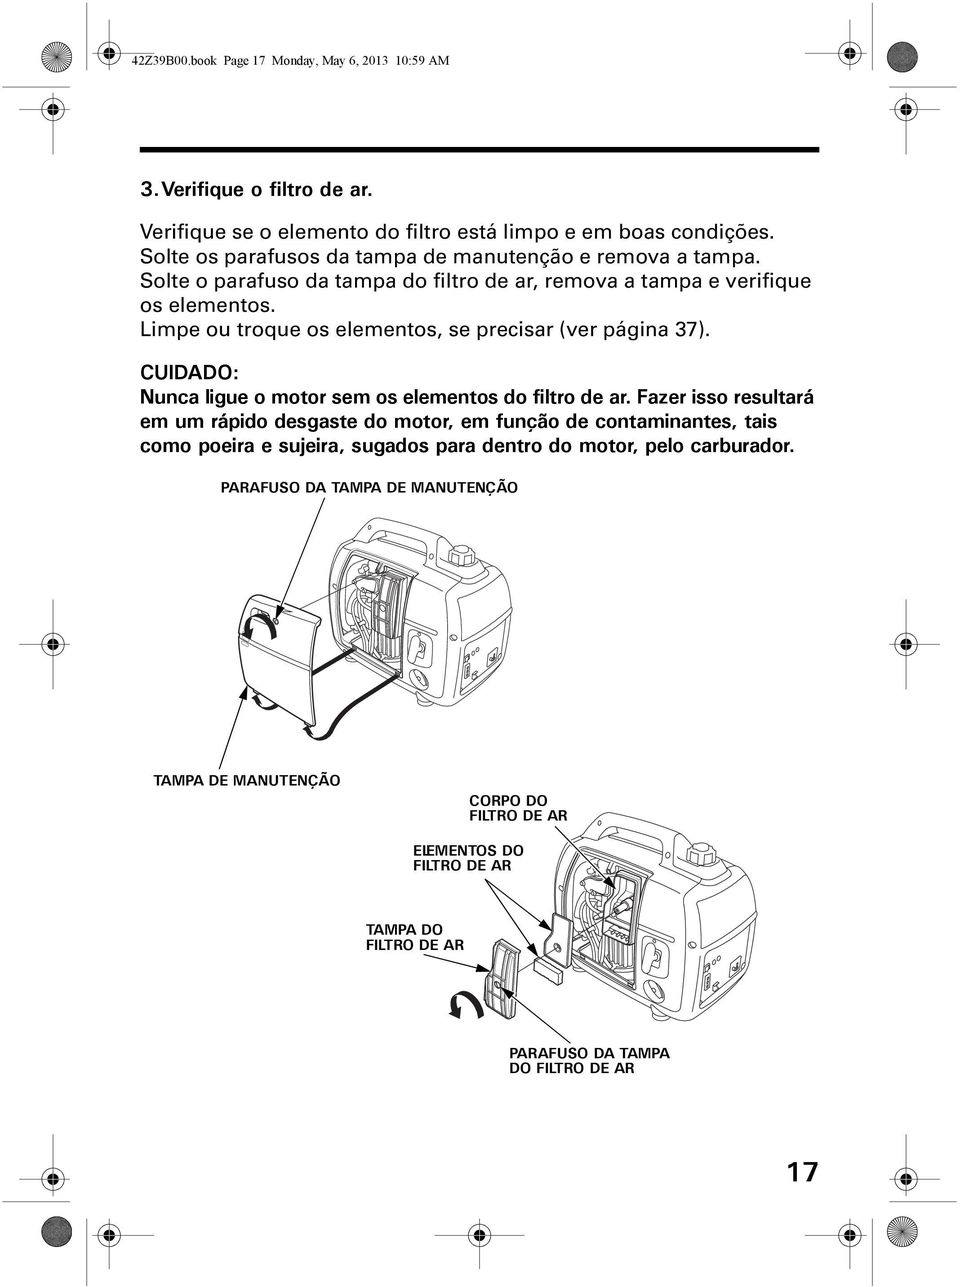 Limpe ou troque os elementos, se precisar (ver página 37). CUIDADO: Nunca ligue o motor sem os elementos do filtro de ar.